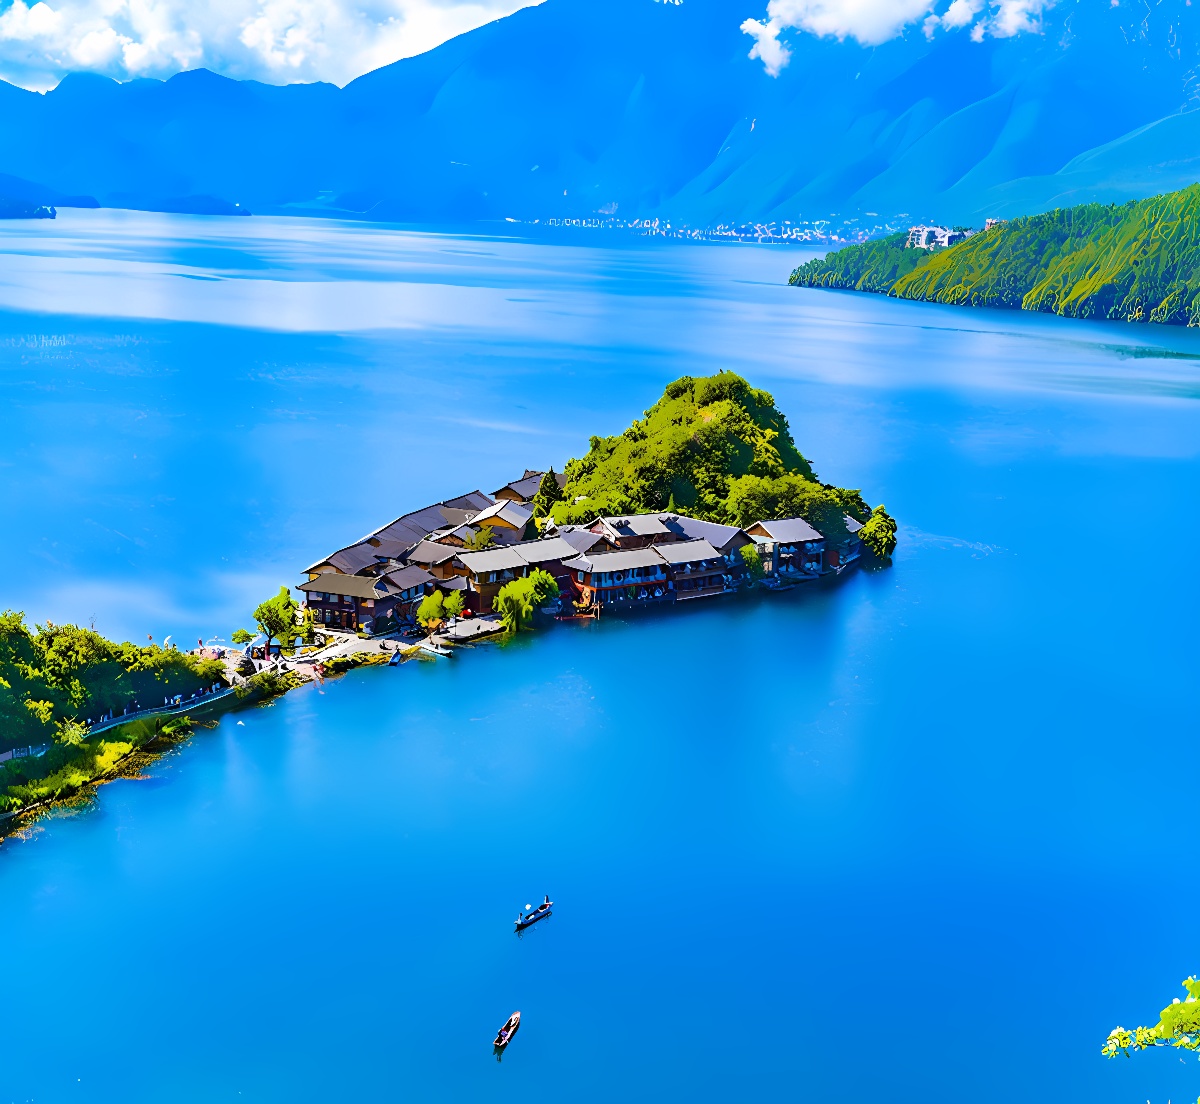 图片展示了一个湖边的小村落，湖水碧蓝，几艘小船在水面上漂浮，周围是葱郁的山峦，景色宁静美丽。